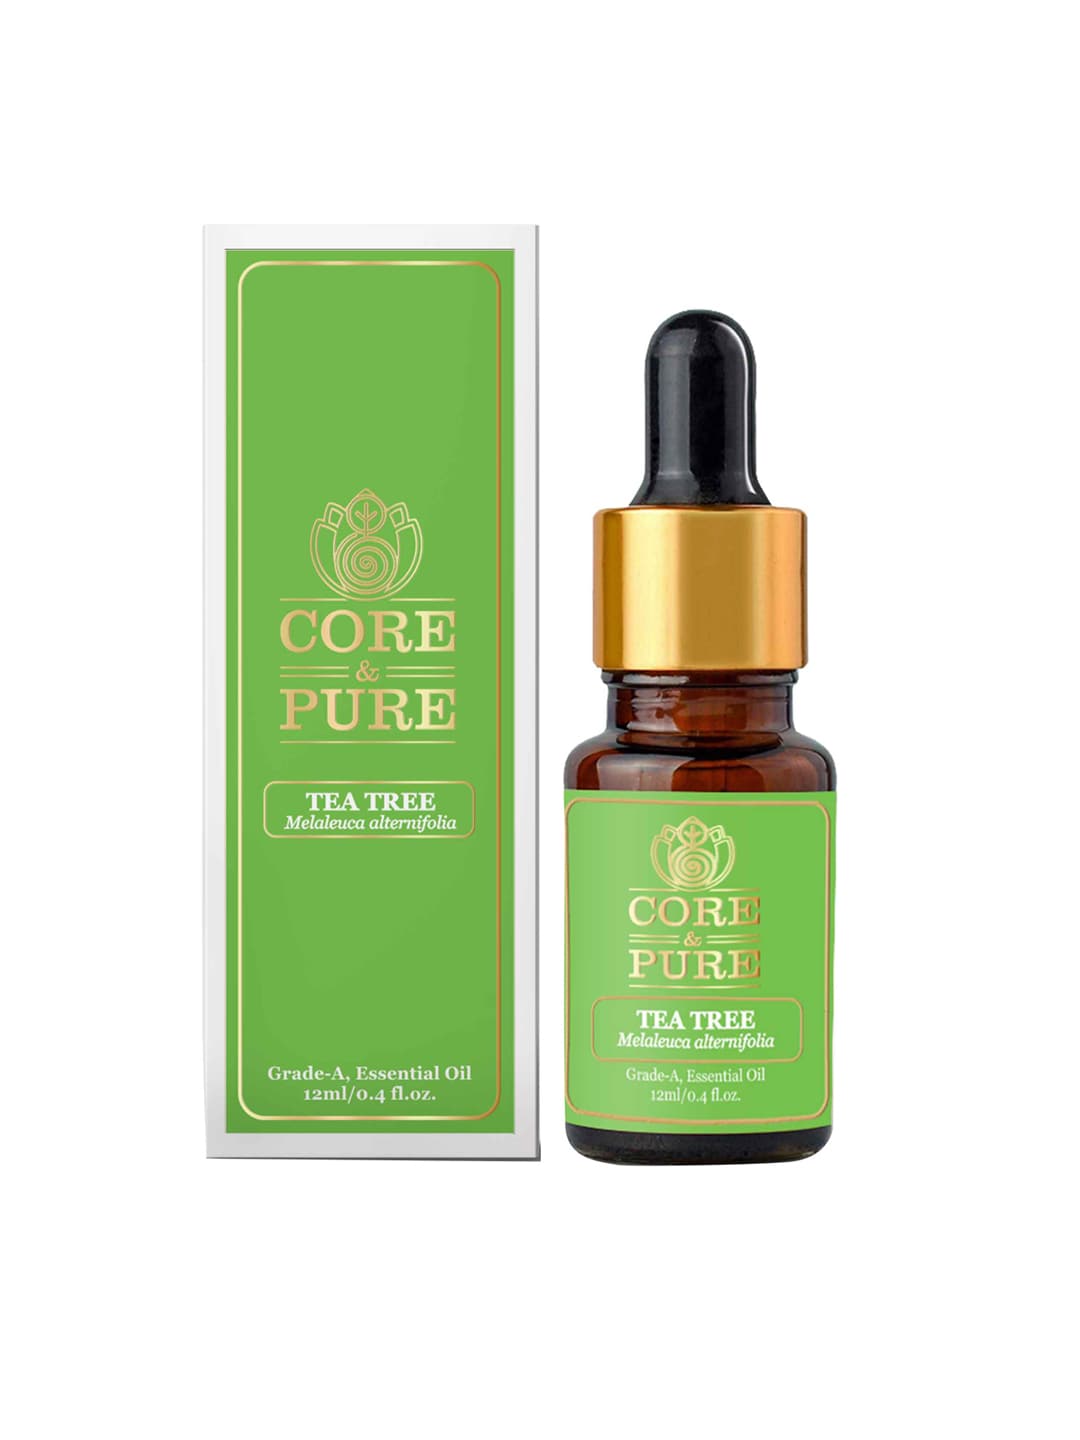 CORE & PURE Tea Tree Grade-A Essential Oil 12ml Price in India